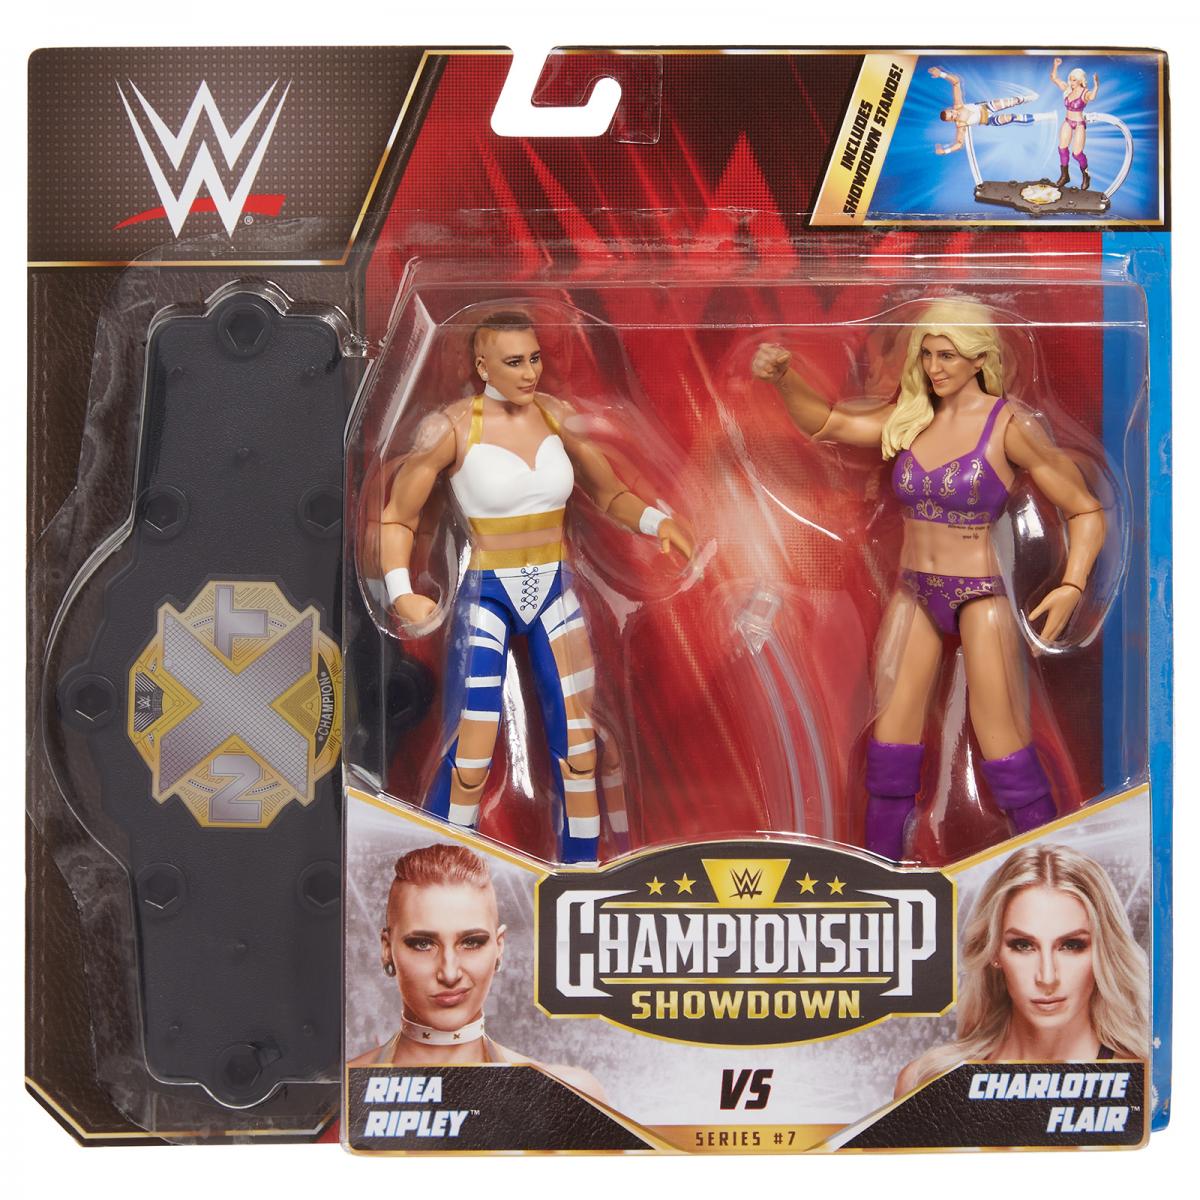 WWE Mattel Championship Showdown 7 Rhea Ripley vs. Charlotte Flair